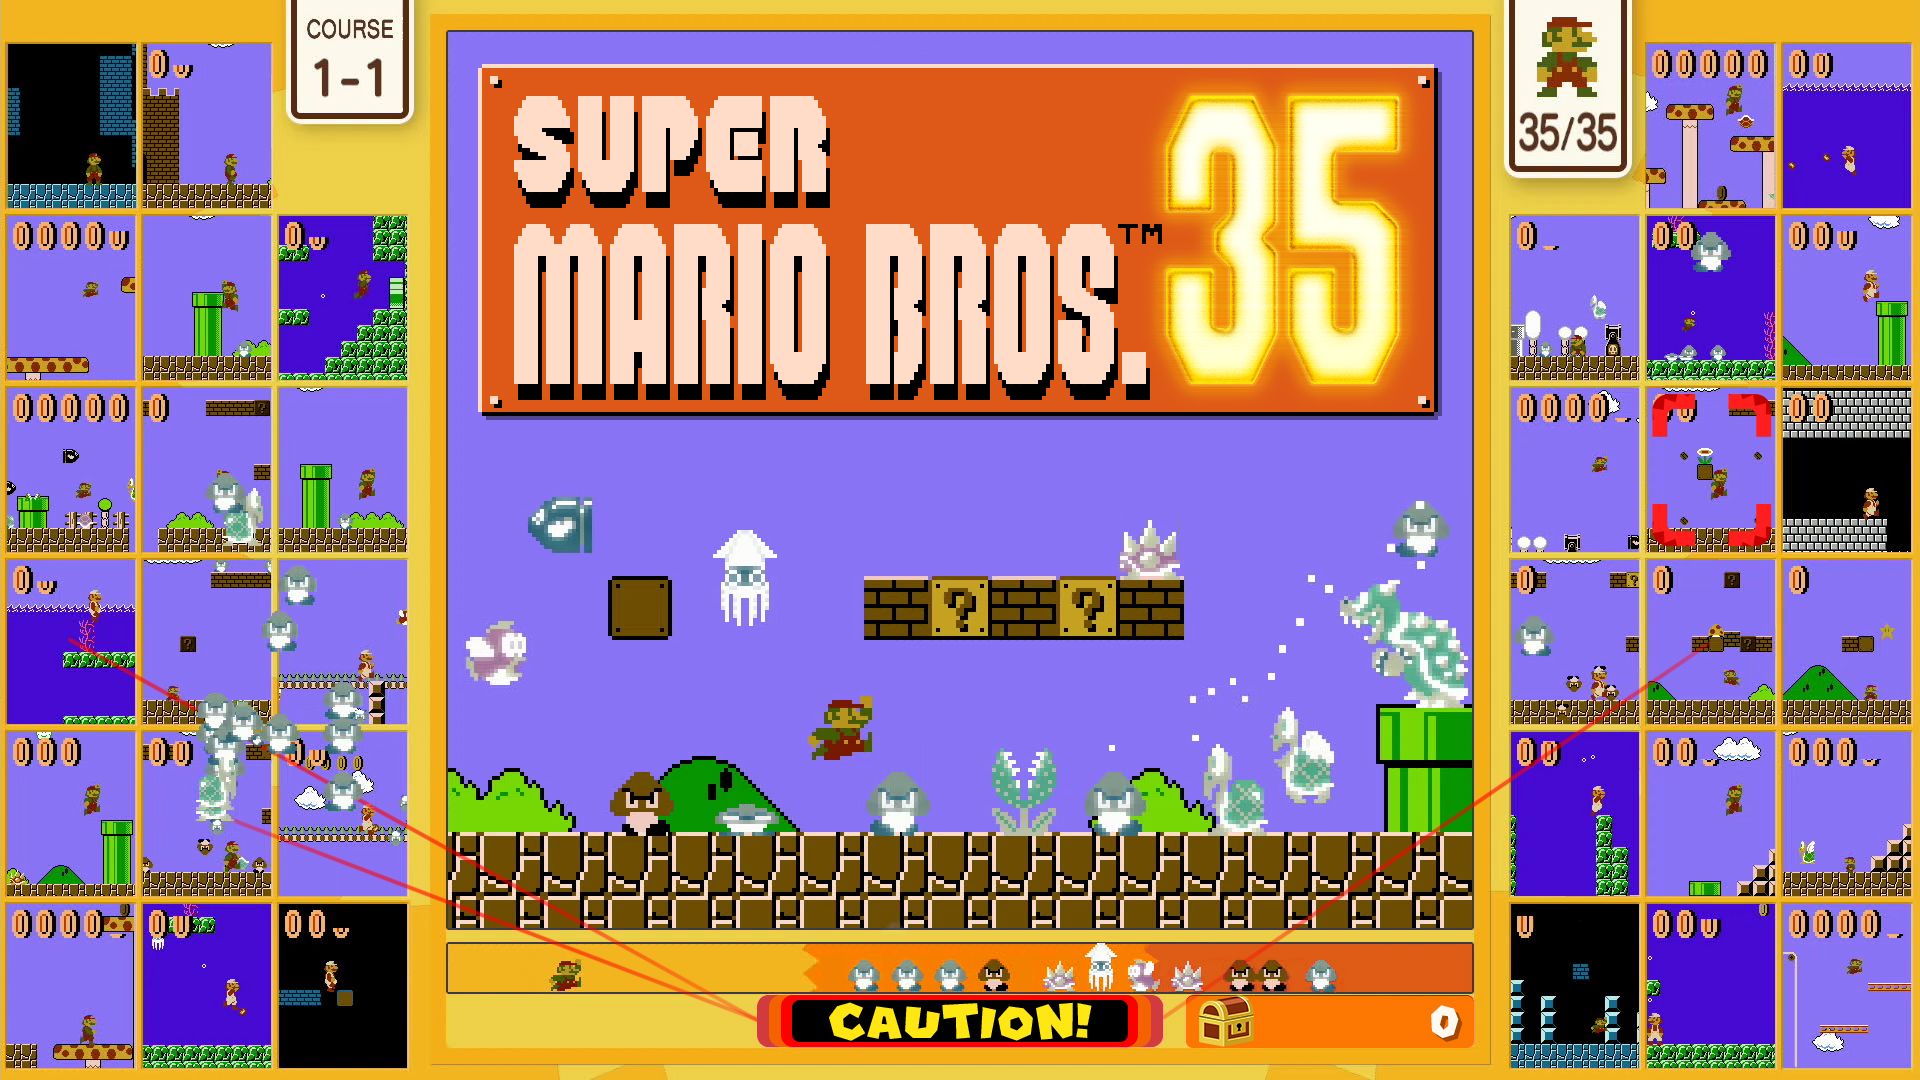 Super Mario Bros. 35 kunngjort for Nintendo Switch Online, tilgjengelig 1. oktober